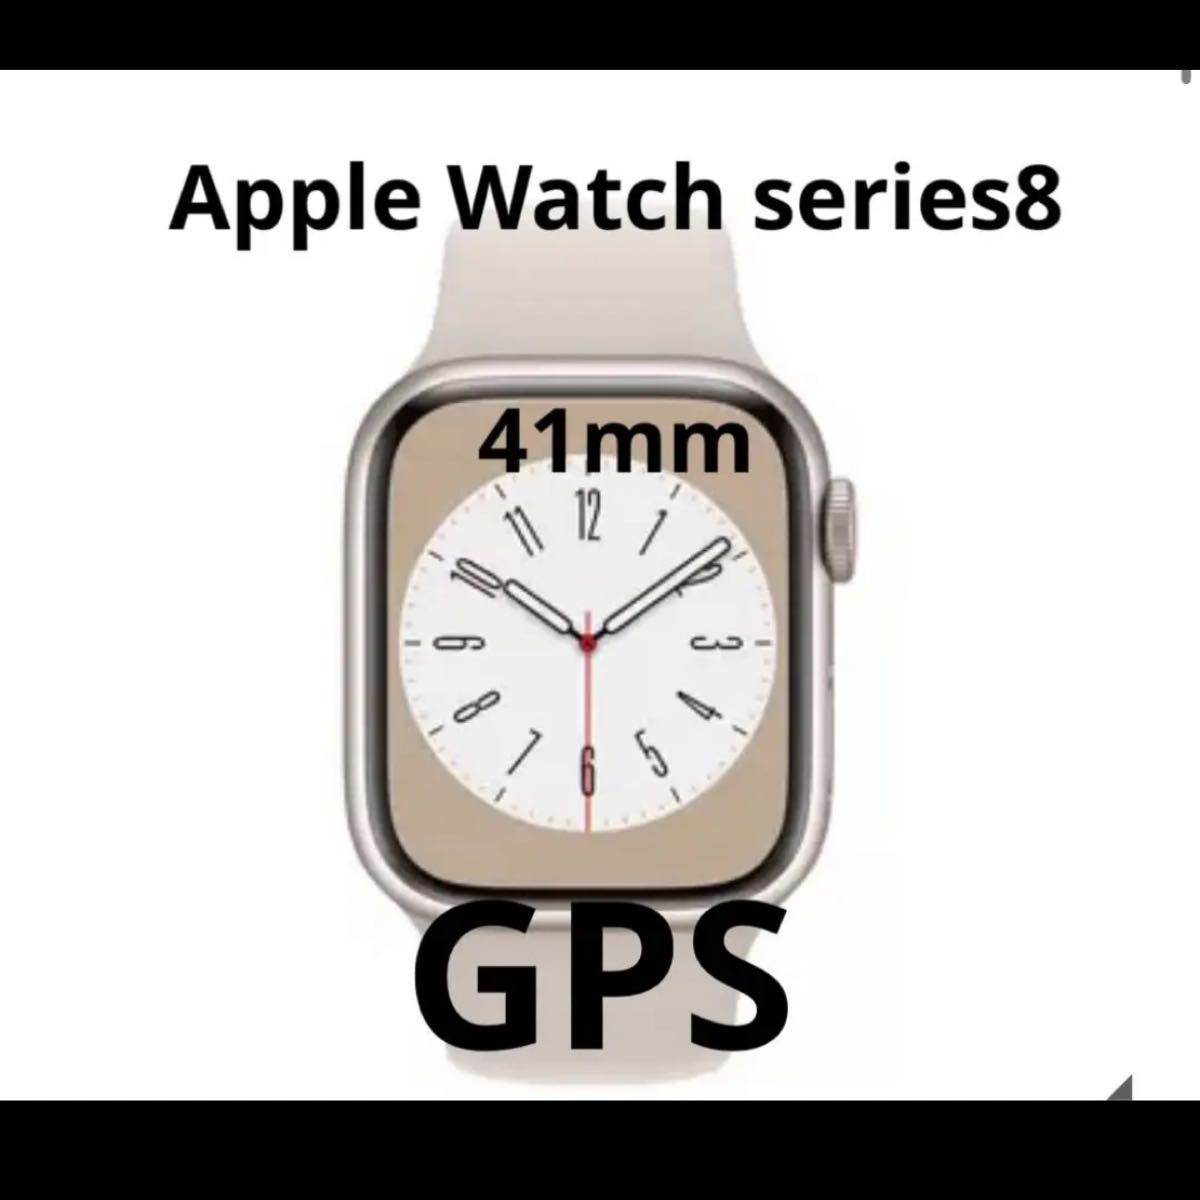 Apple Watch Series GPSモデル 41mm アルミニウム